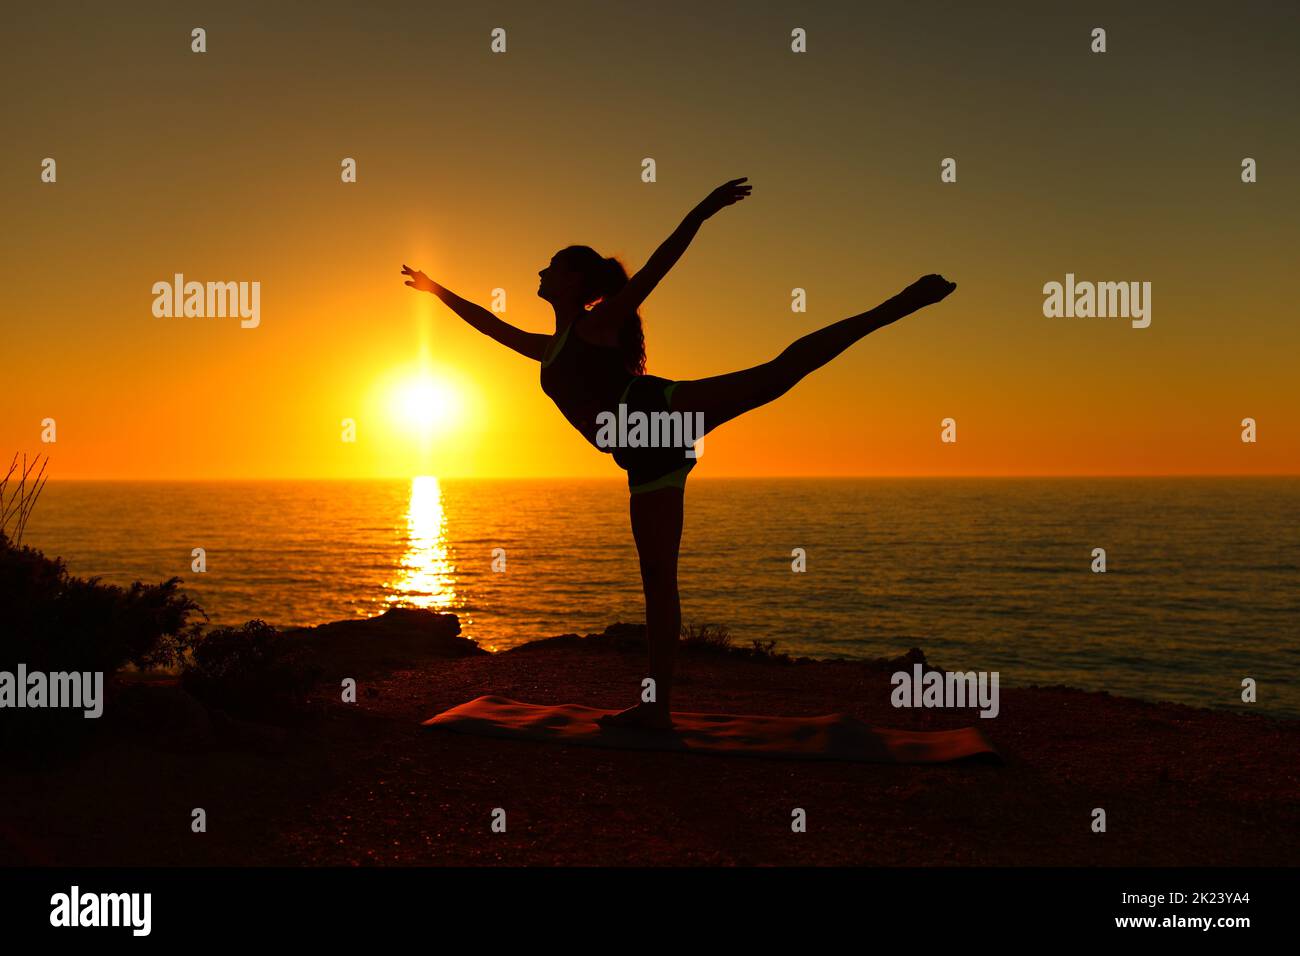 Backlight ballerina silhouette danding ballet at sunset on the beach Stock Photo